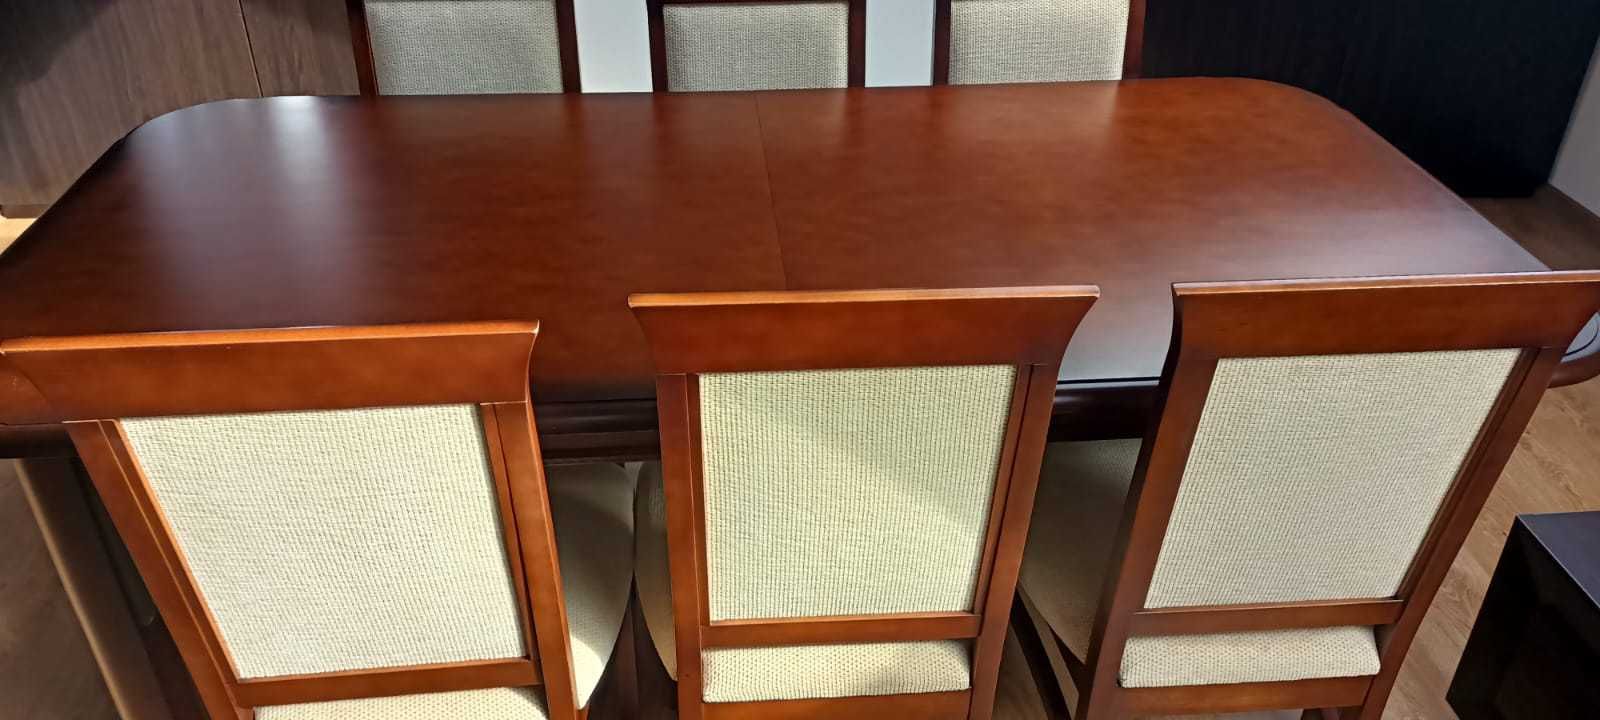 Stół z krzesłami- komplet